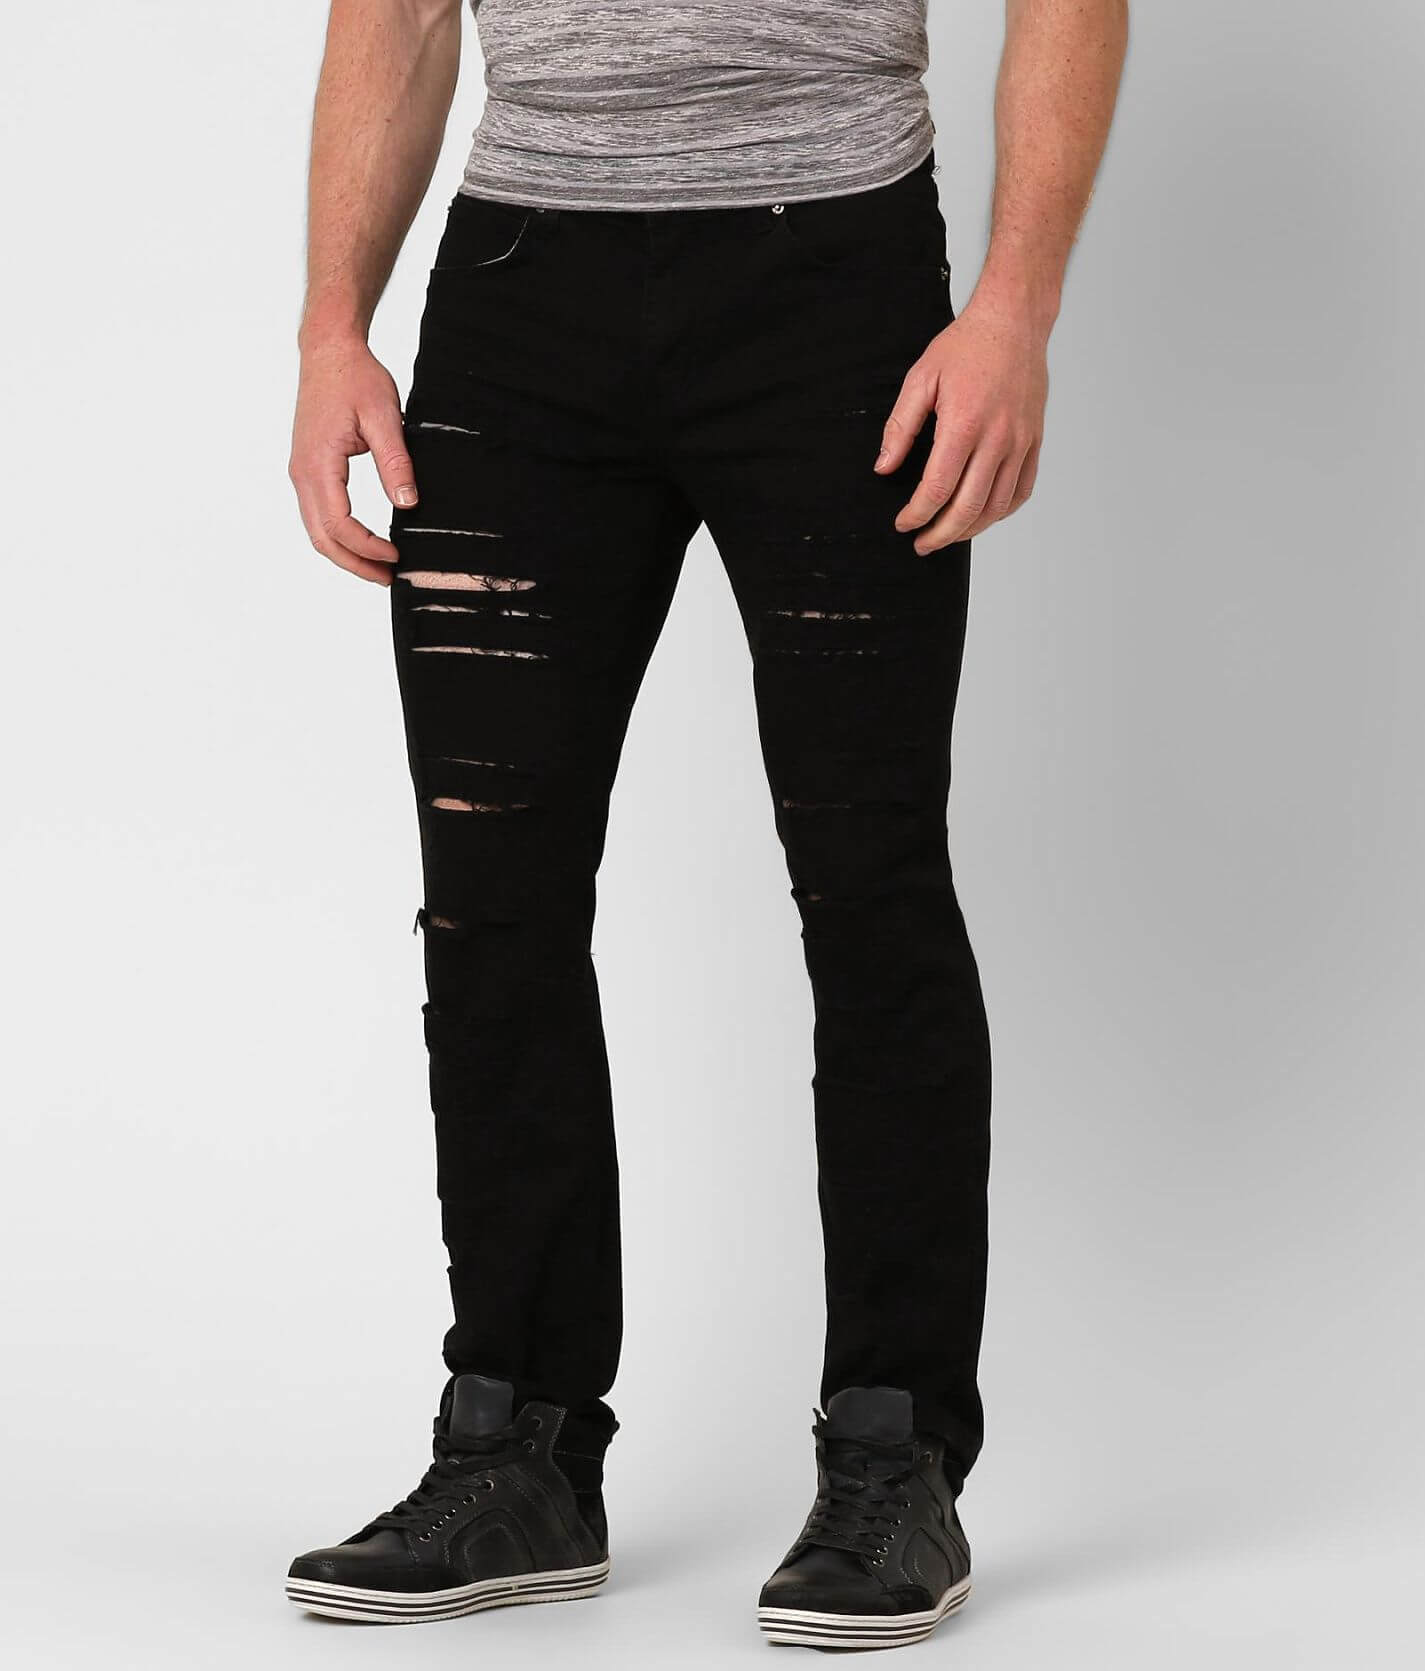 Rustic Dime Men's Metal Black skinny Fit Jeans Pants 